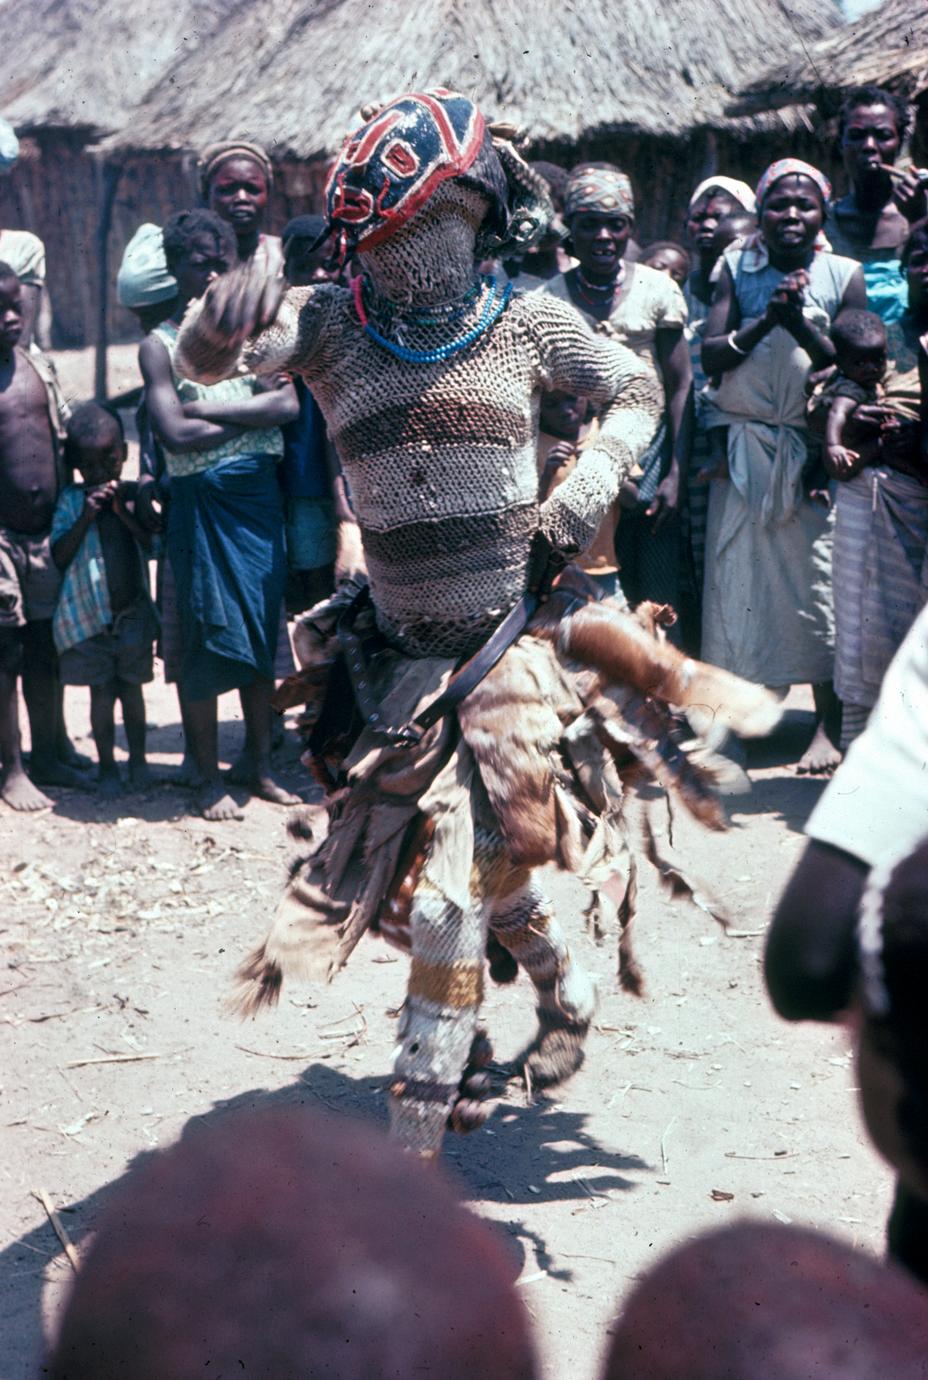 A Cokwe Maske Dancer Performing Circumcicion Ceremony Rites